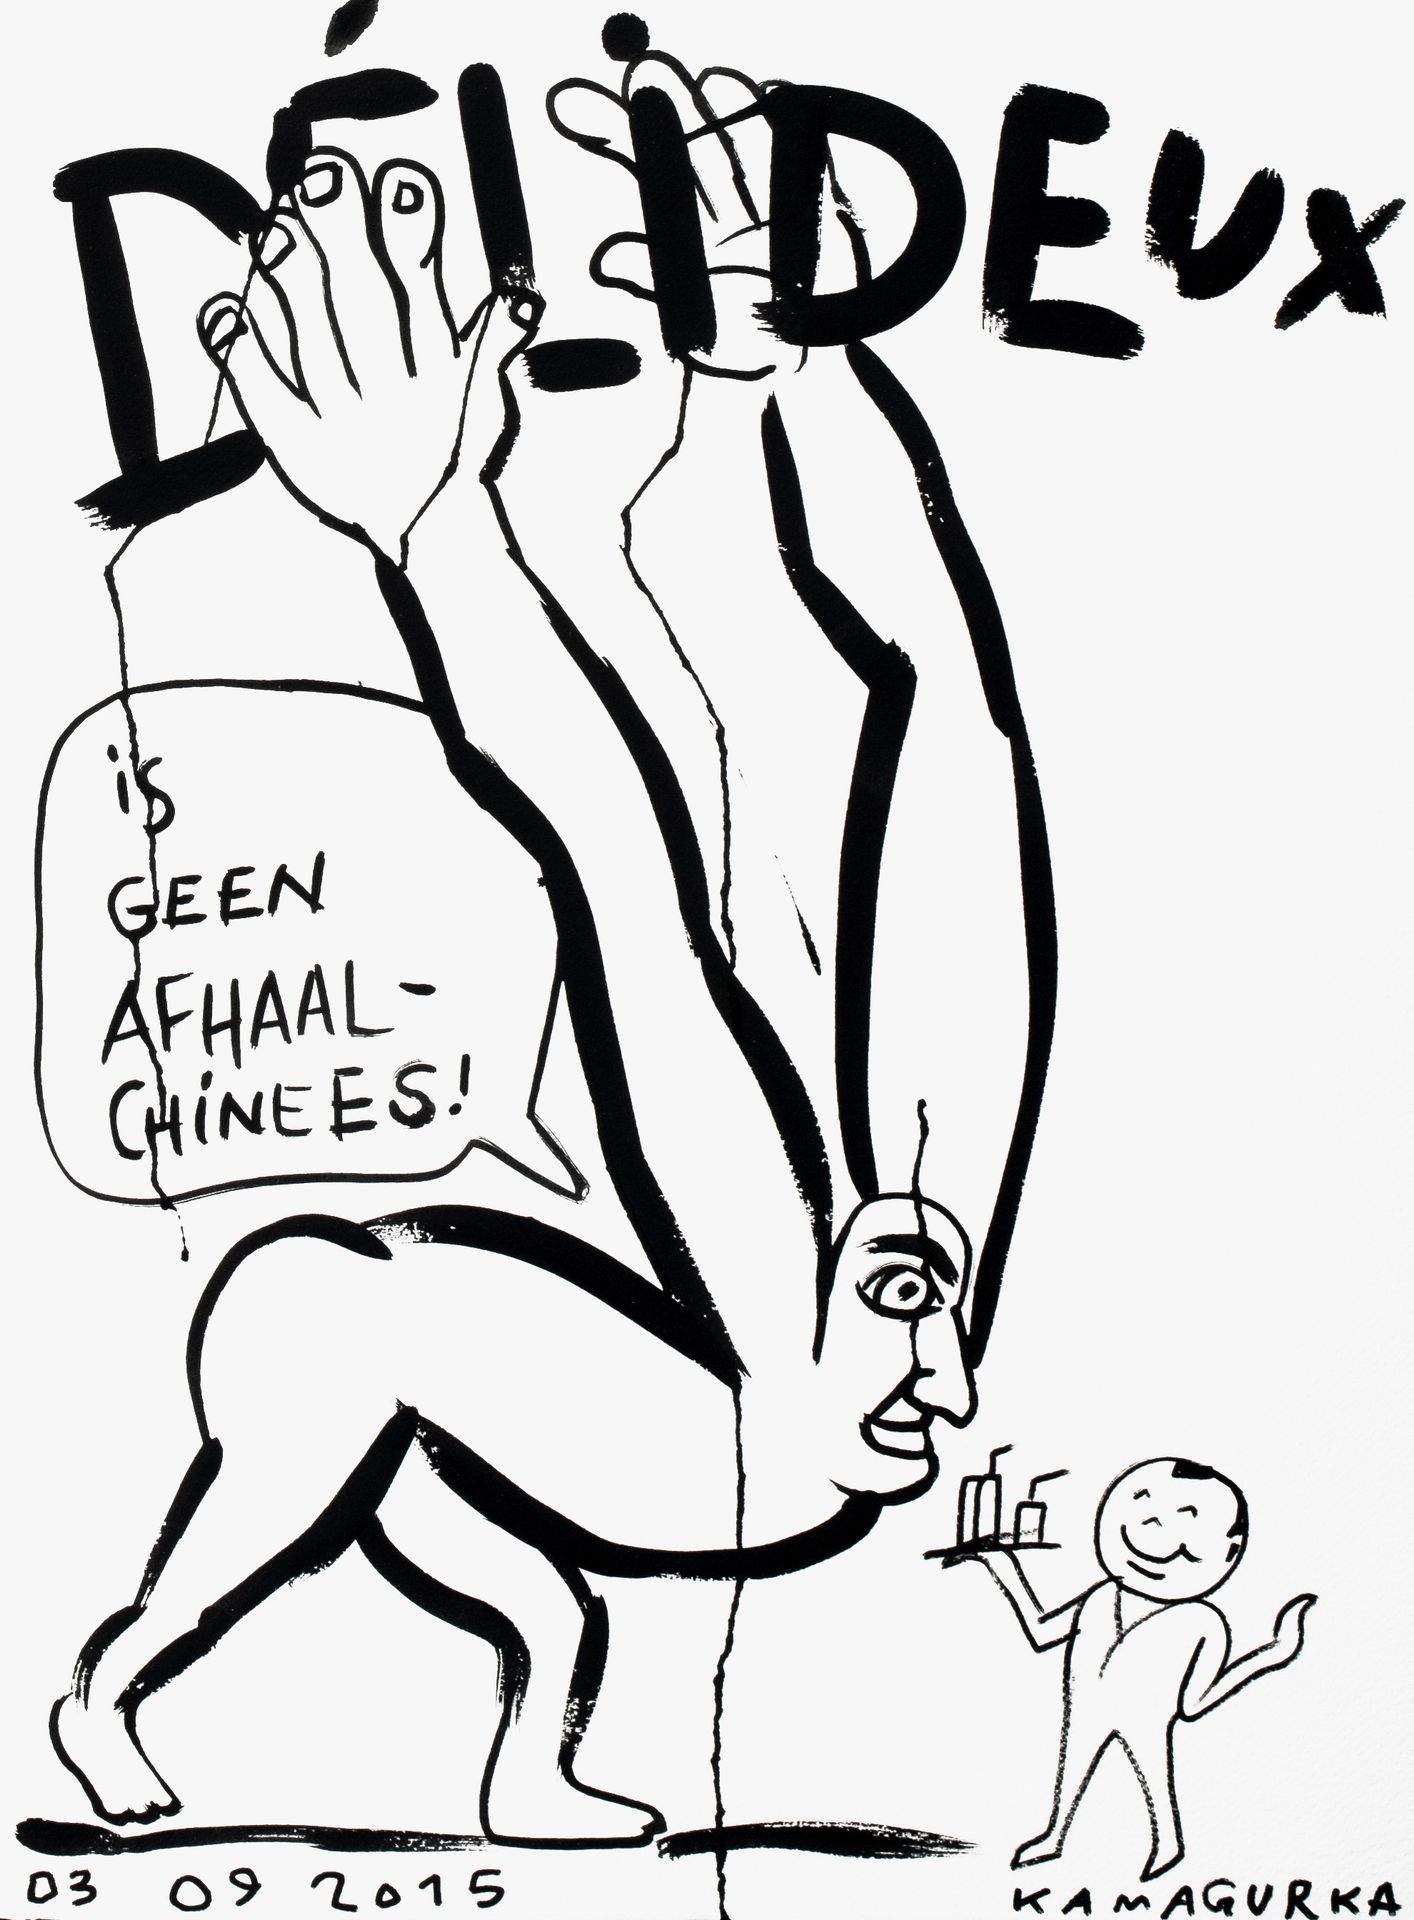 Kamagurka (1956), 'Delideux is geen afhaalchinees', 2015, ink on paper, 56 x 77 &hellip;